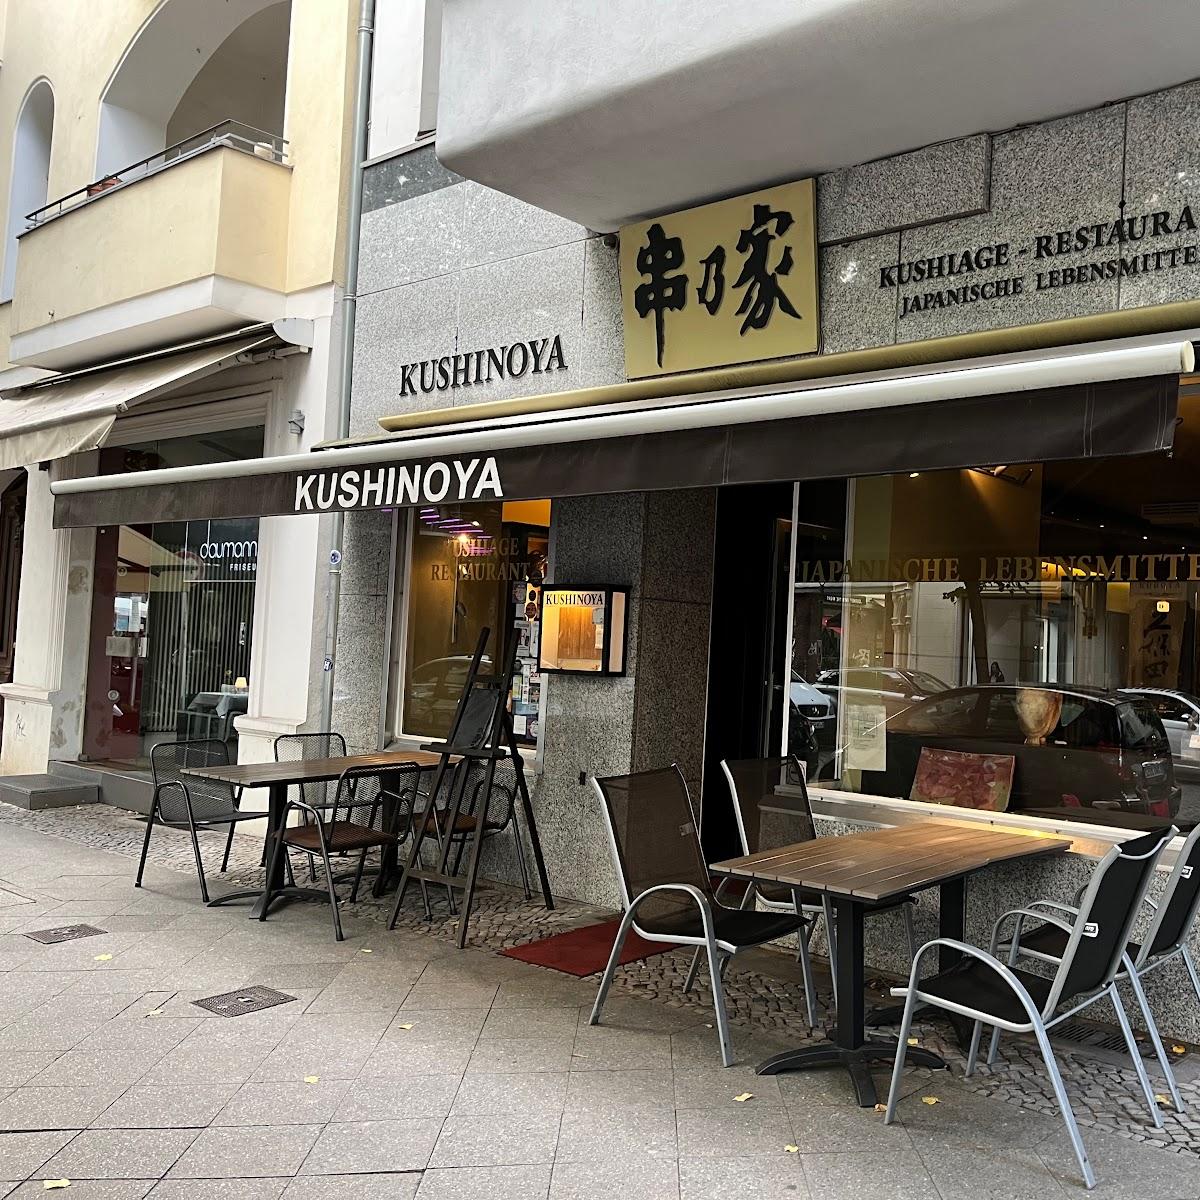 Restaurant "Kushinoya" in Berlin